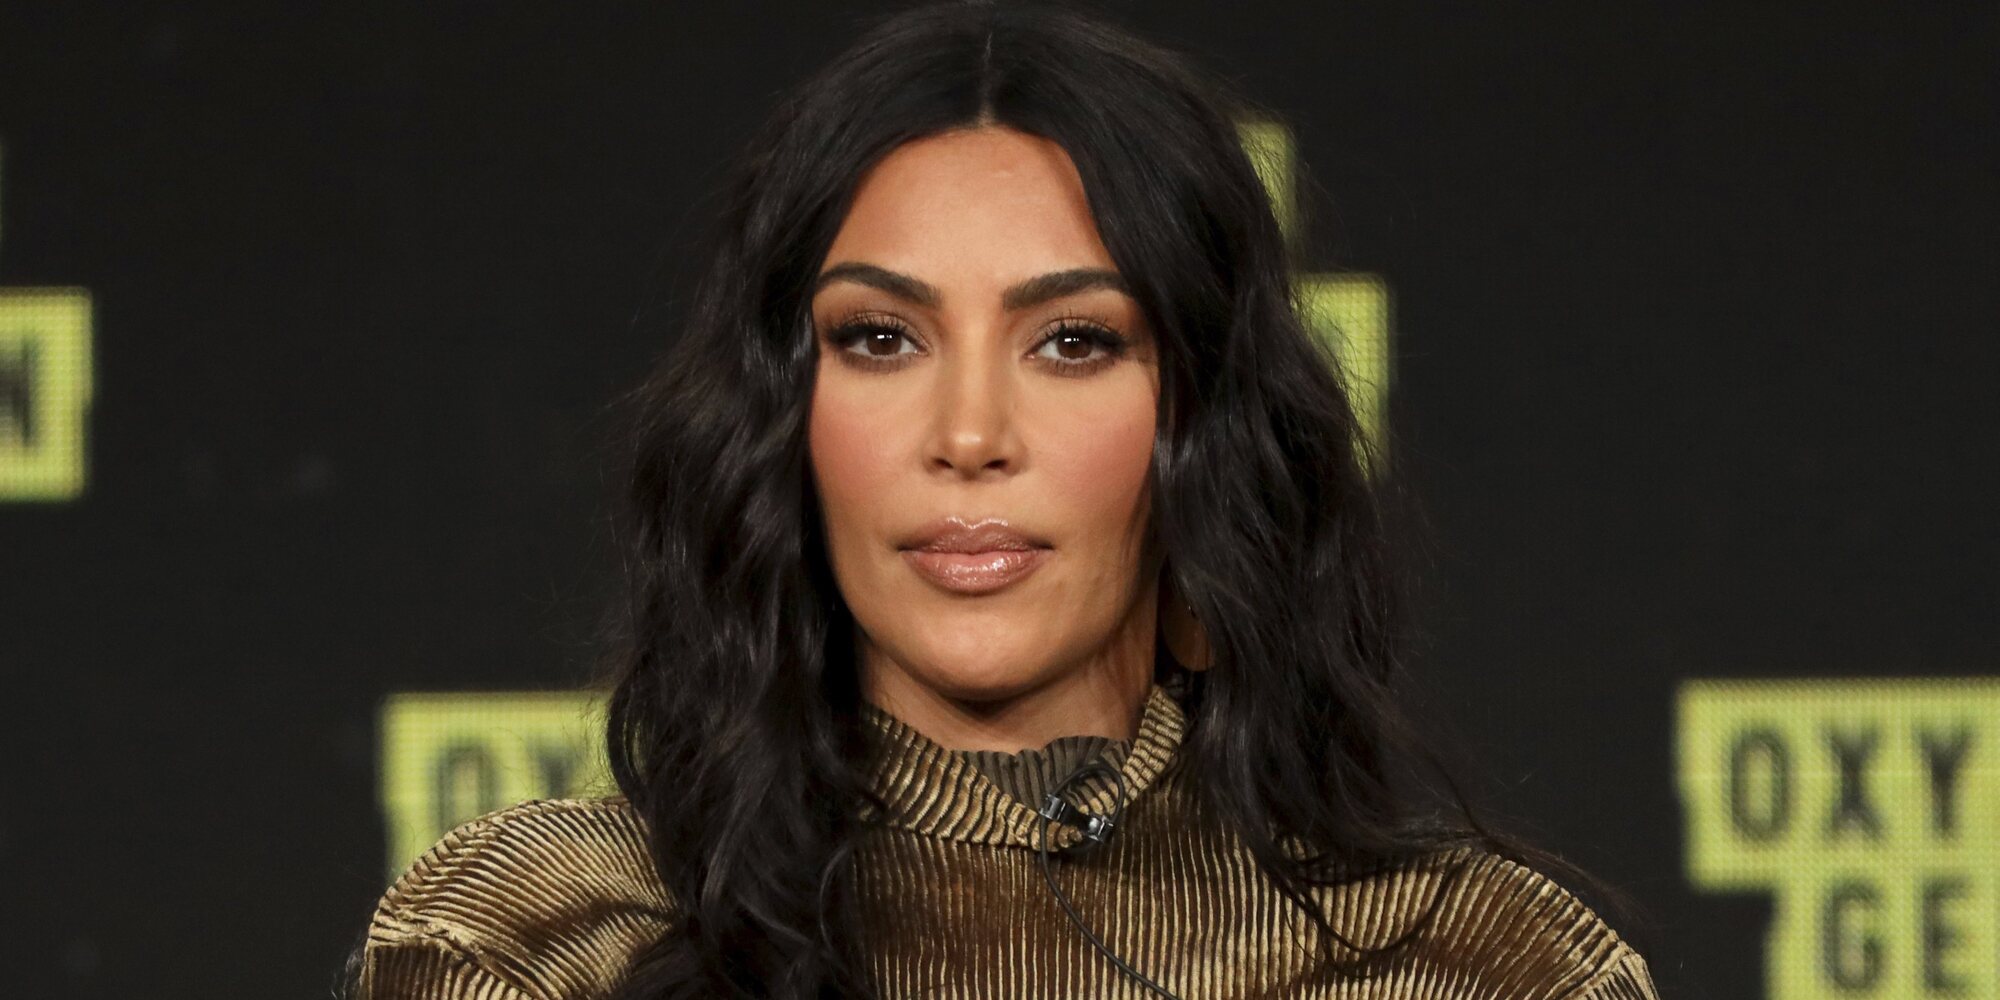 El vídeo sexual de Kim, motivo de burla en la primera jornada del juicio de Blac Chyna contra las Kardashians